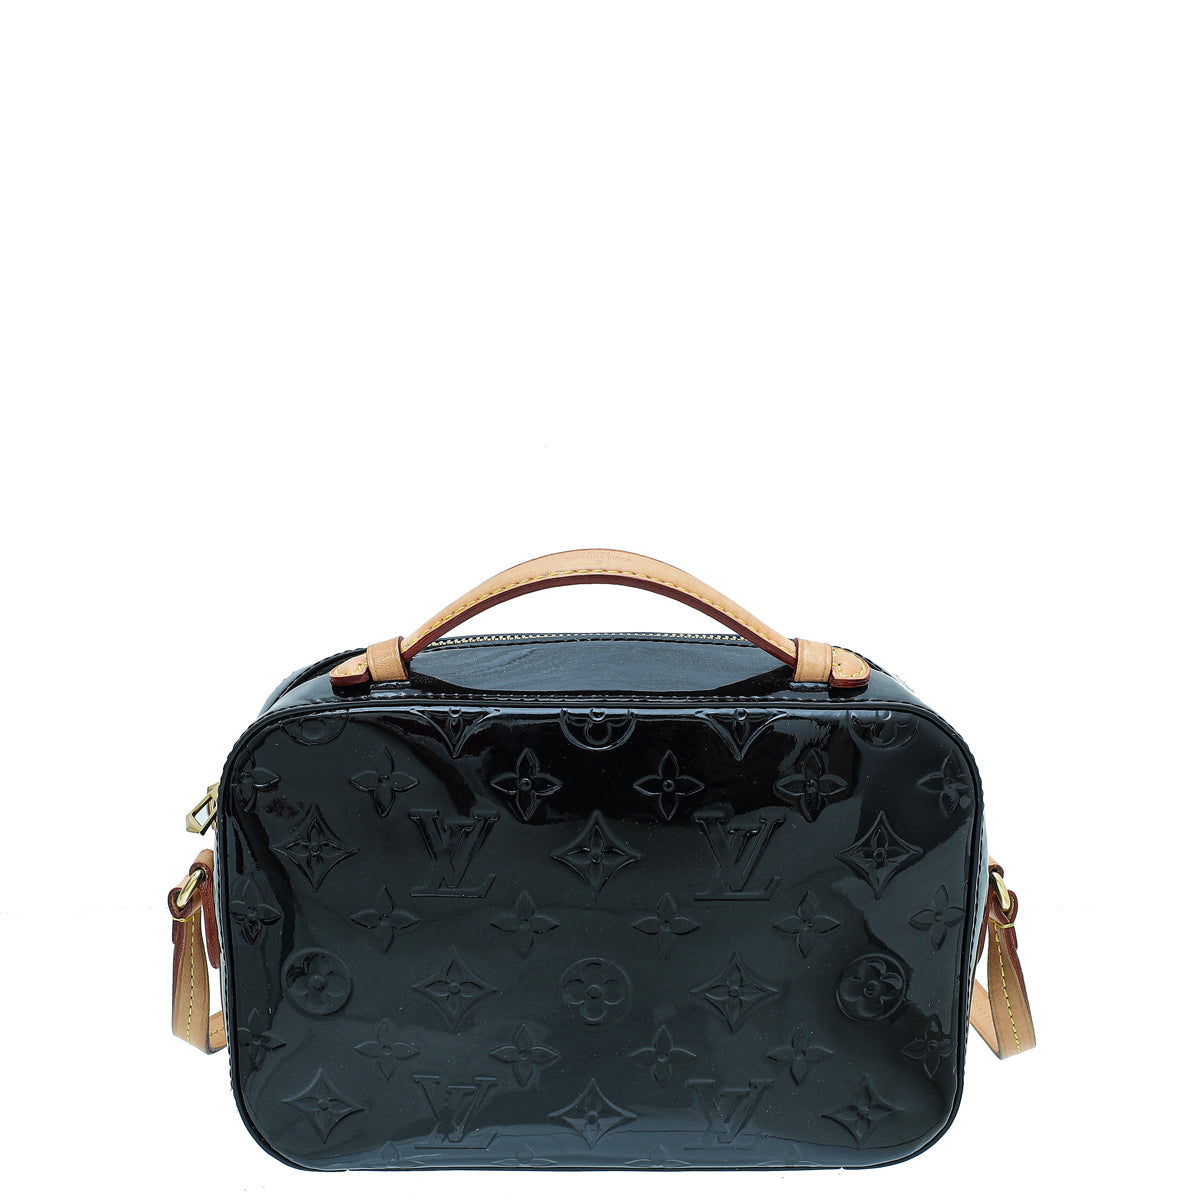 Louis Vuitton Vernis Santa Monica Shoulder Bag